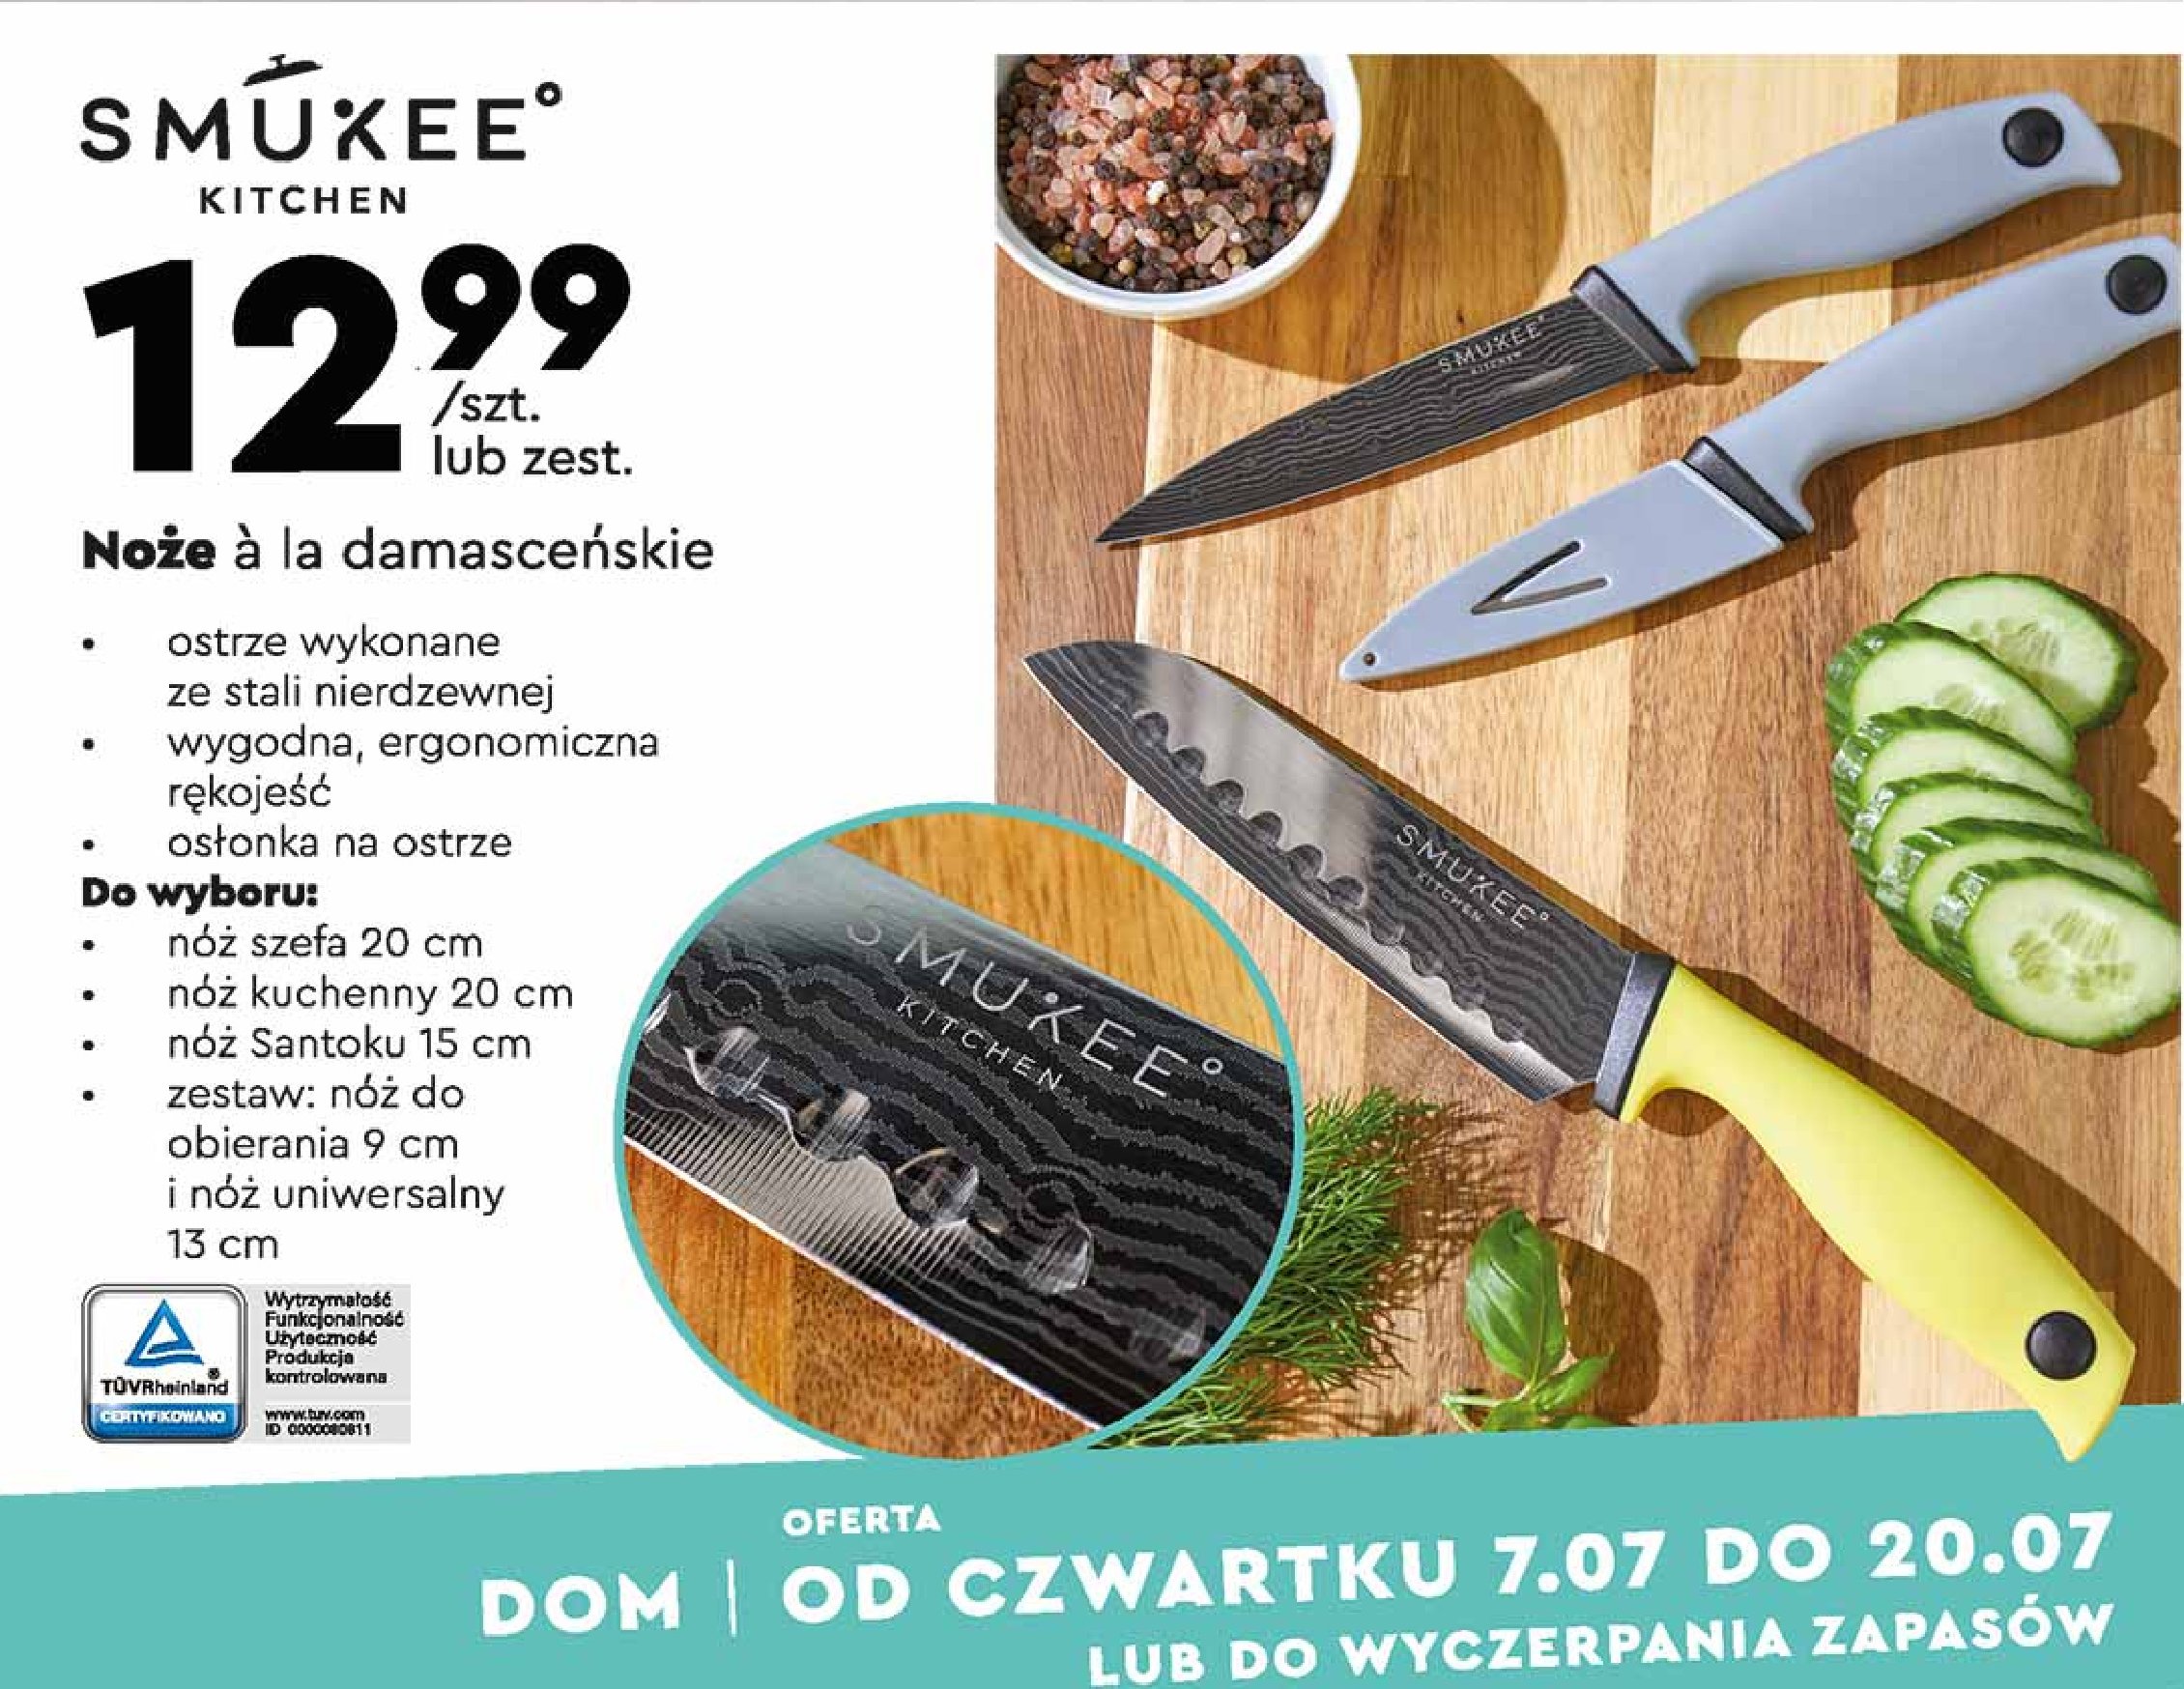 Nóż szefa ala damasceński 20 cm Smukee kitchen promocje